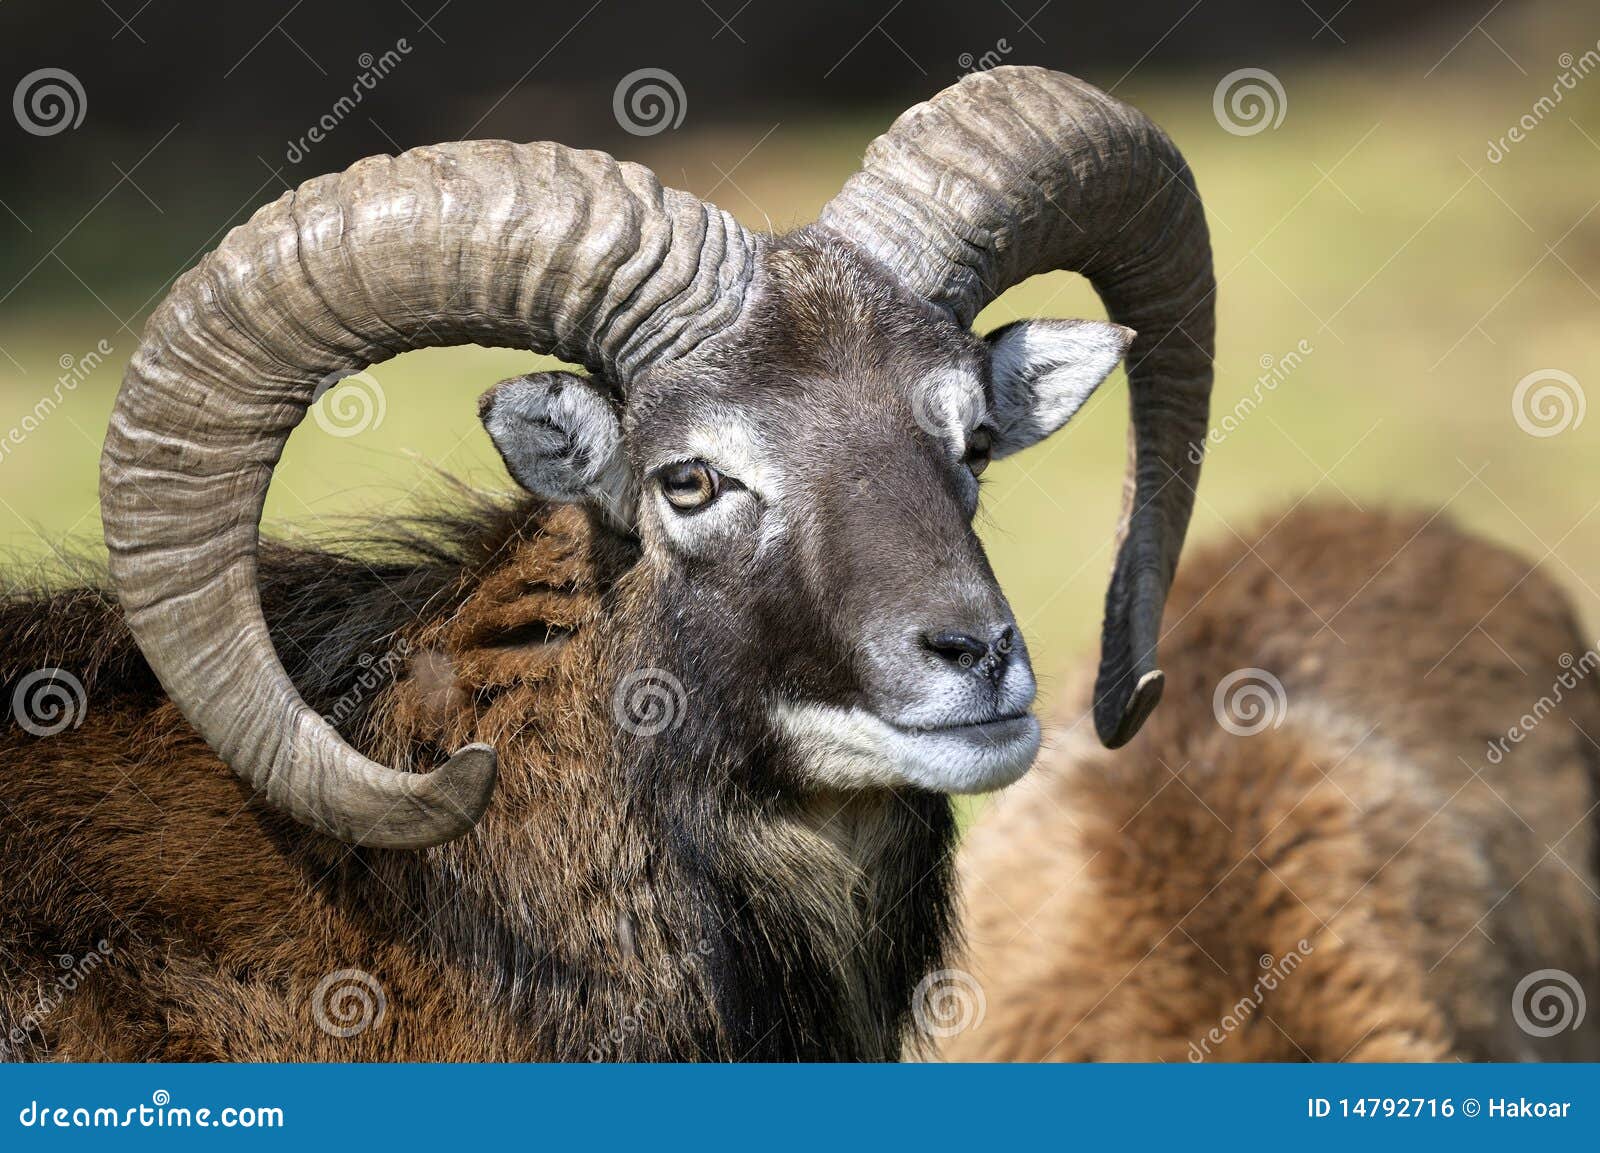 mouflon, ovis aries